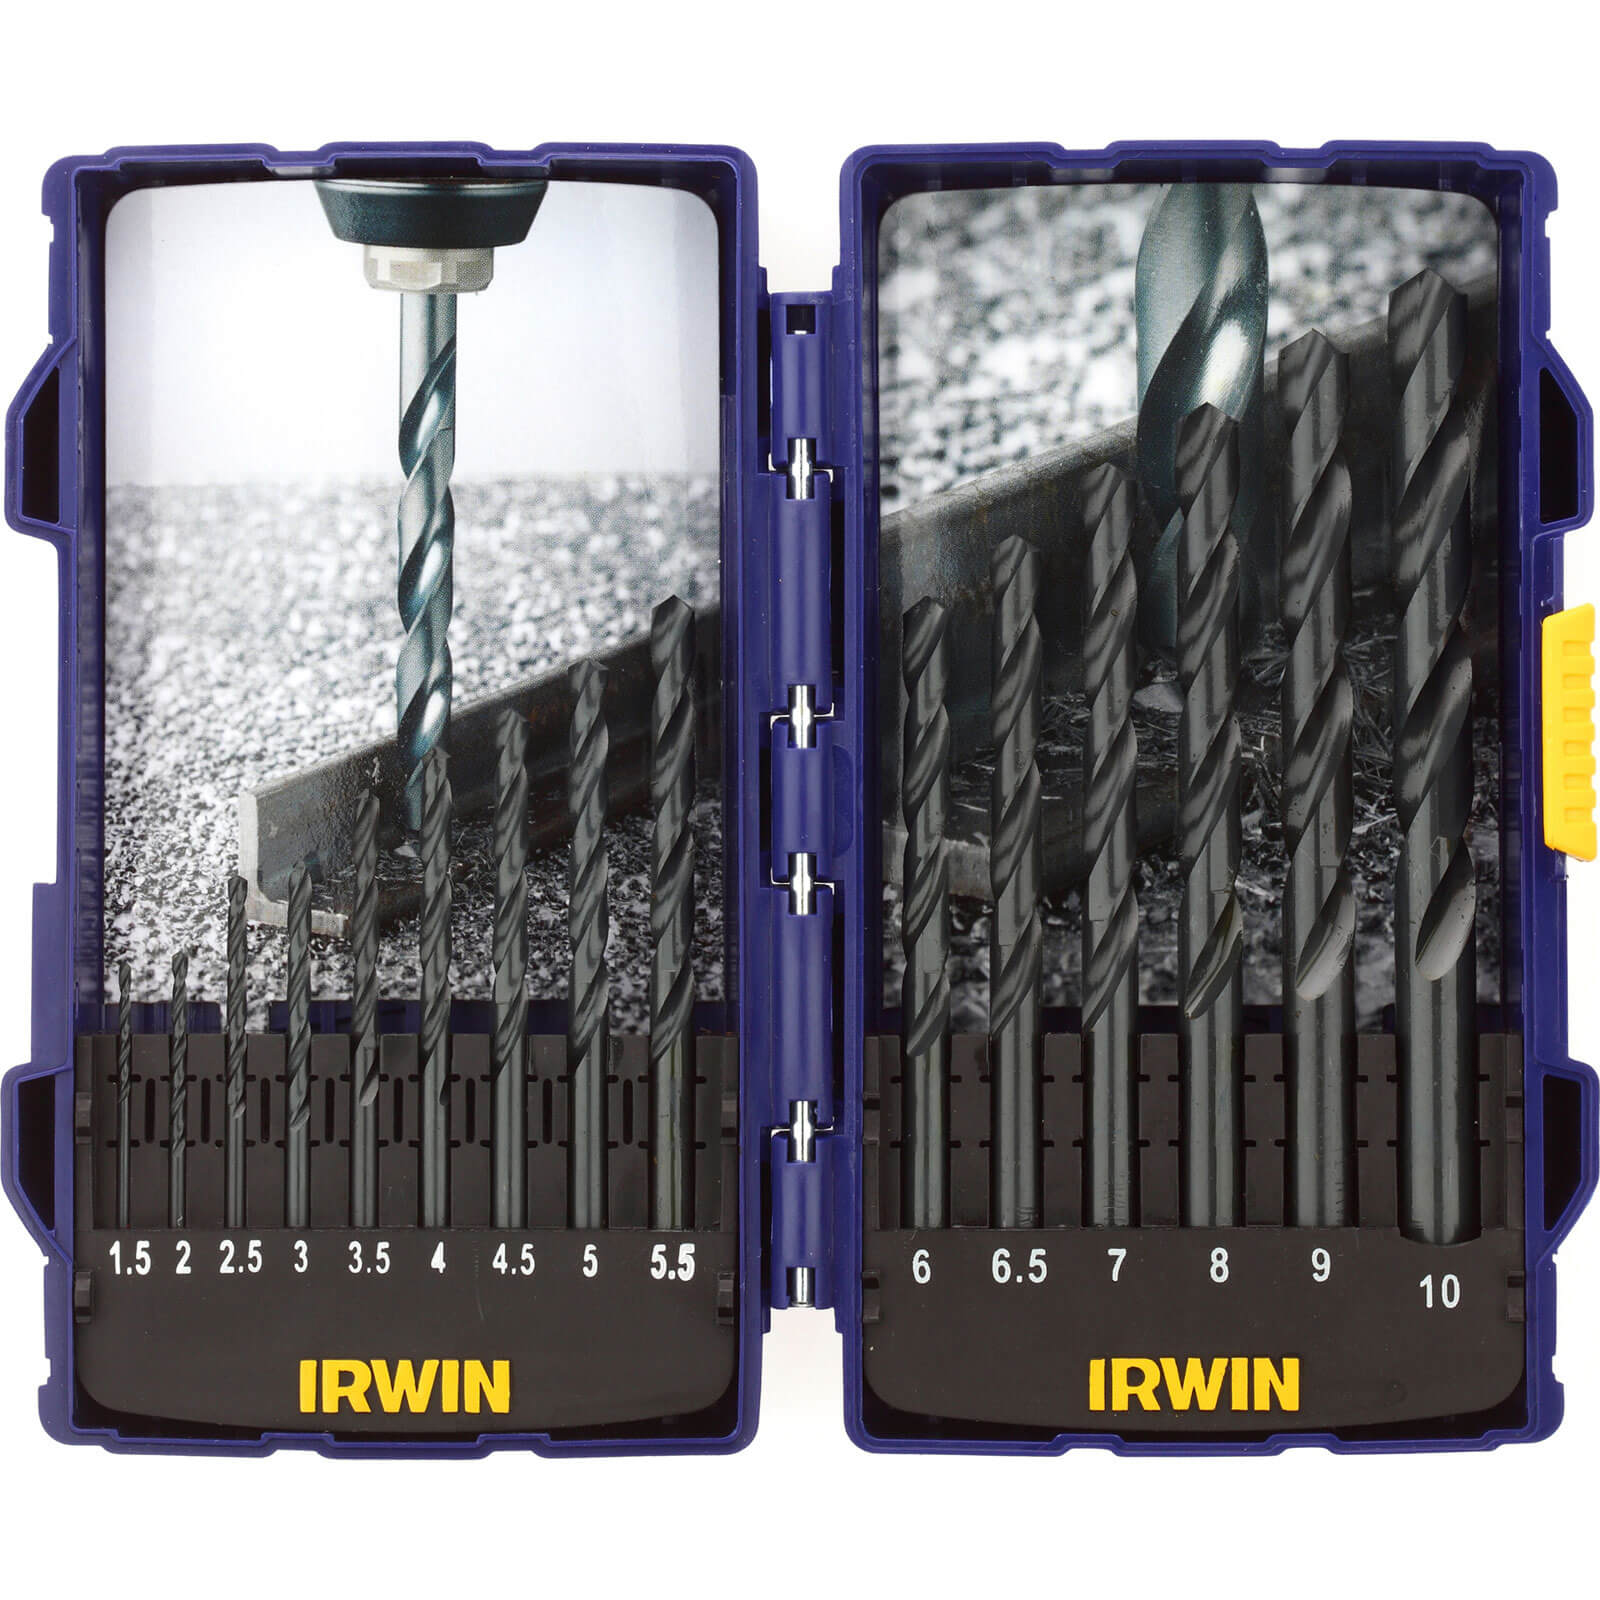 Irwin Pro 15 Piece HSS Drill Bit Set 1.5 - 10mm